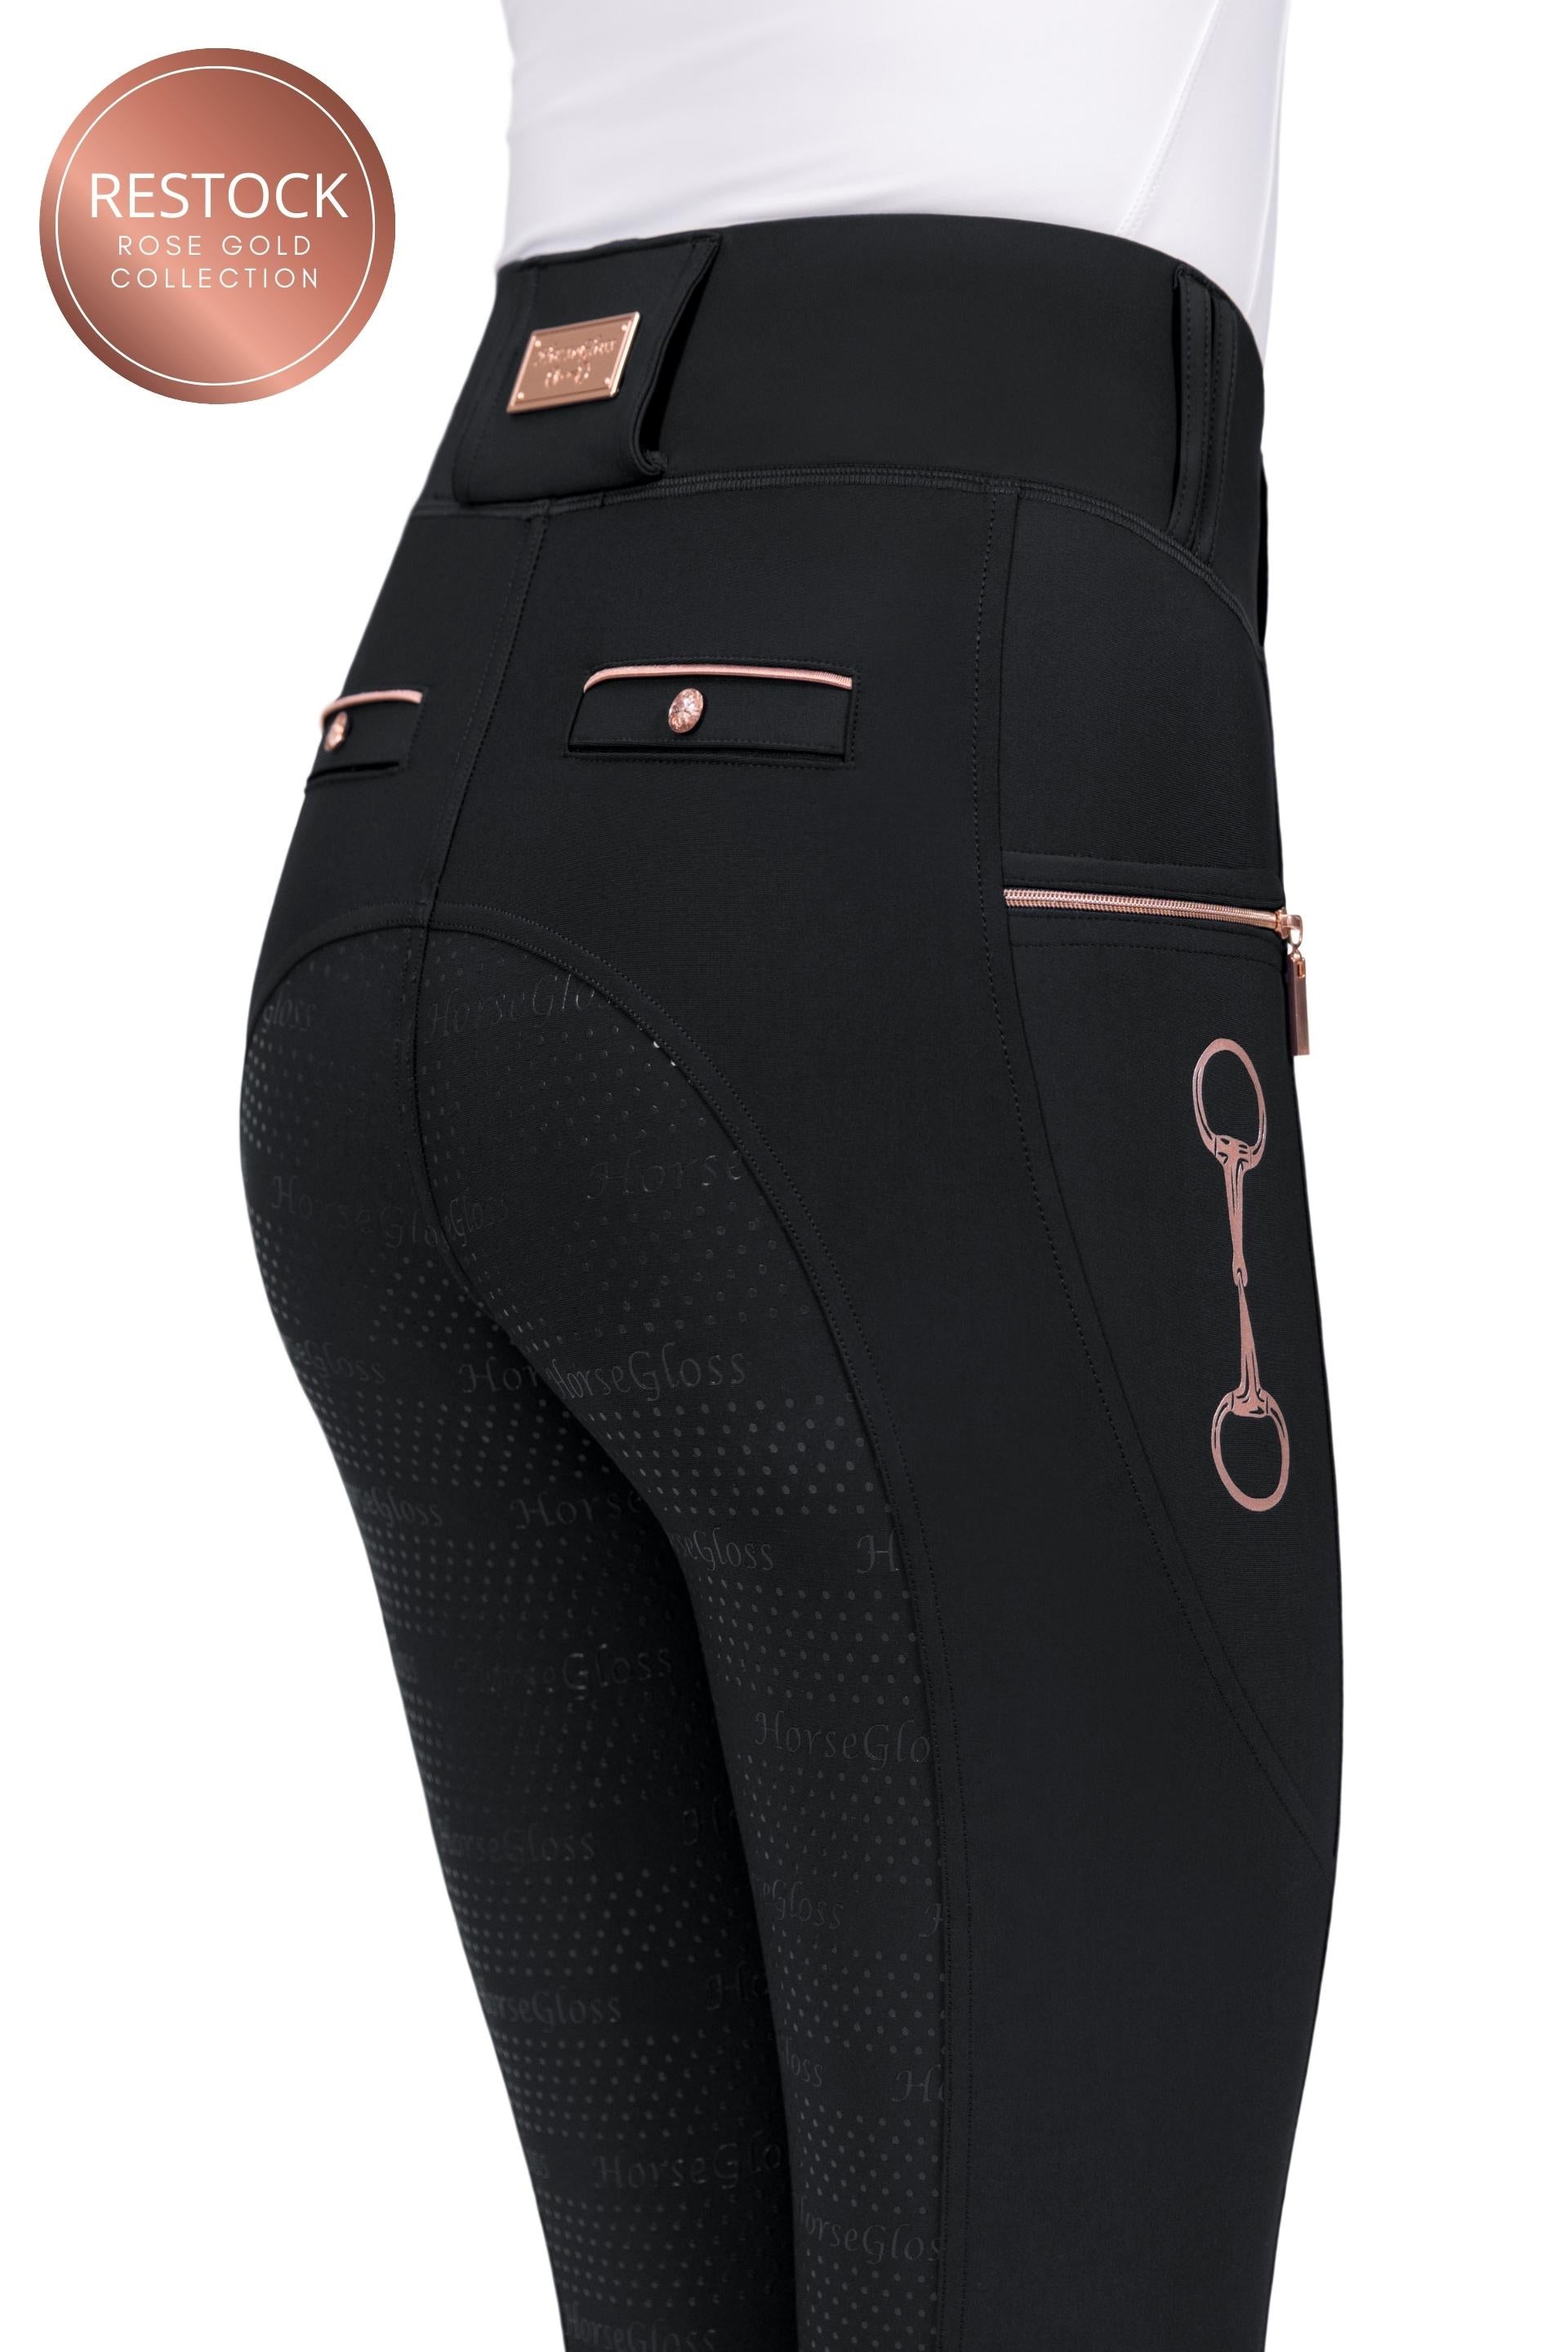 Women's leggings PLR003 - black/pink